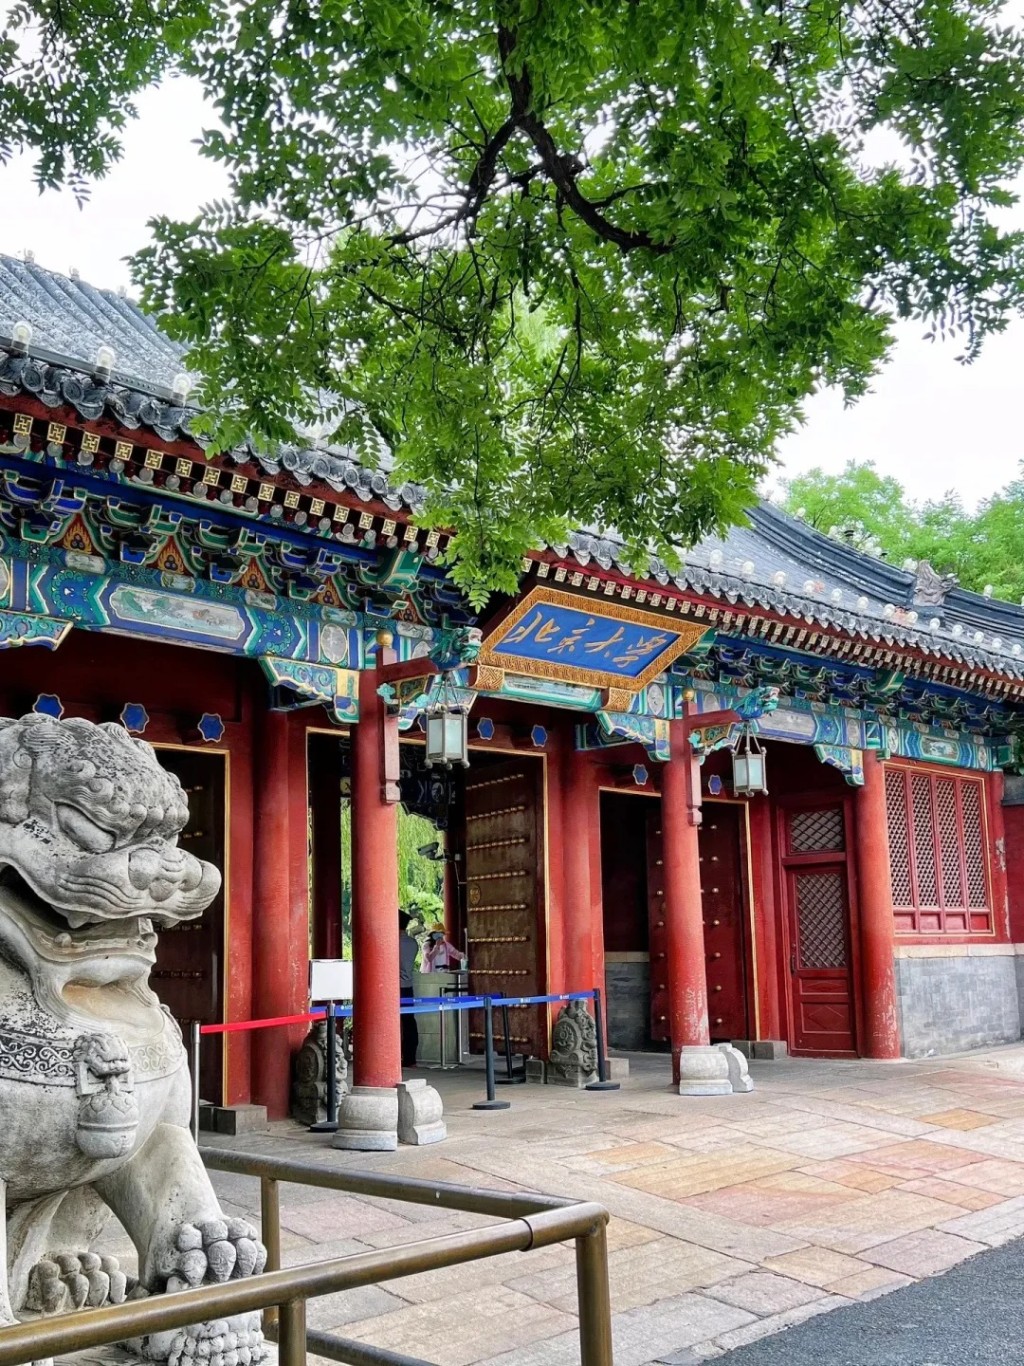 北京大學也是不少台胞希望升讀的學府。小紅書